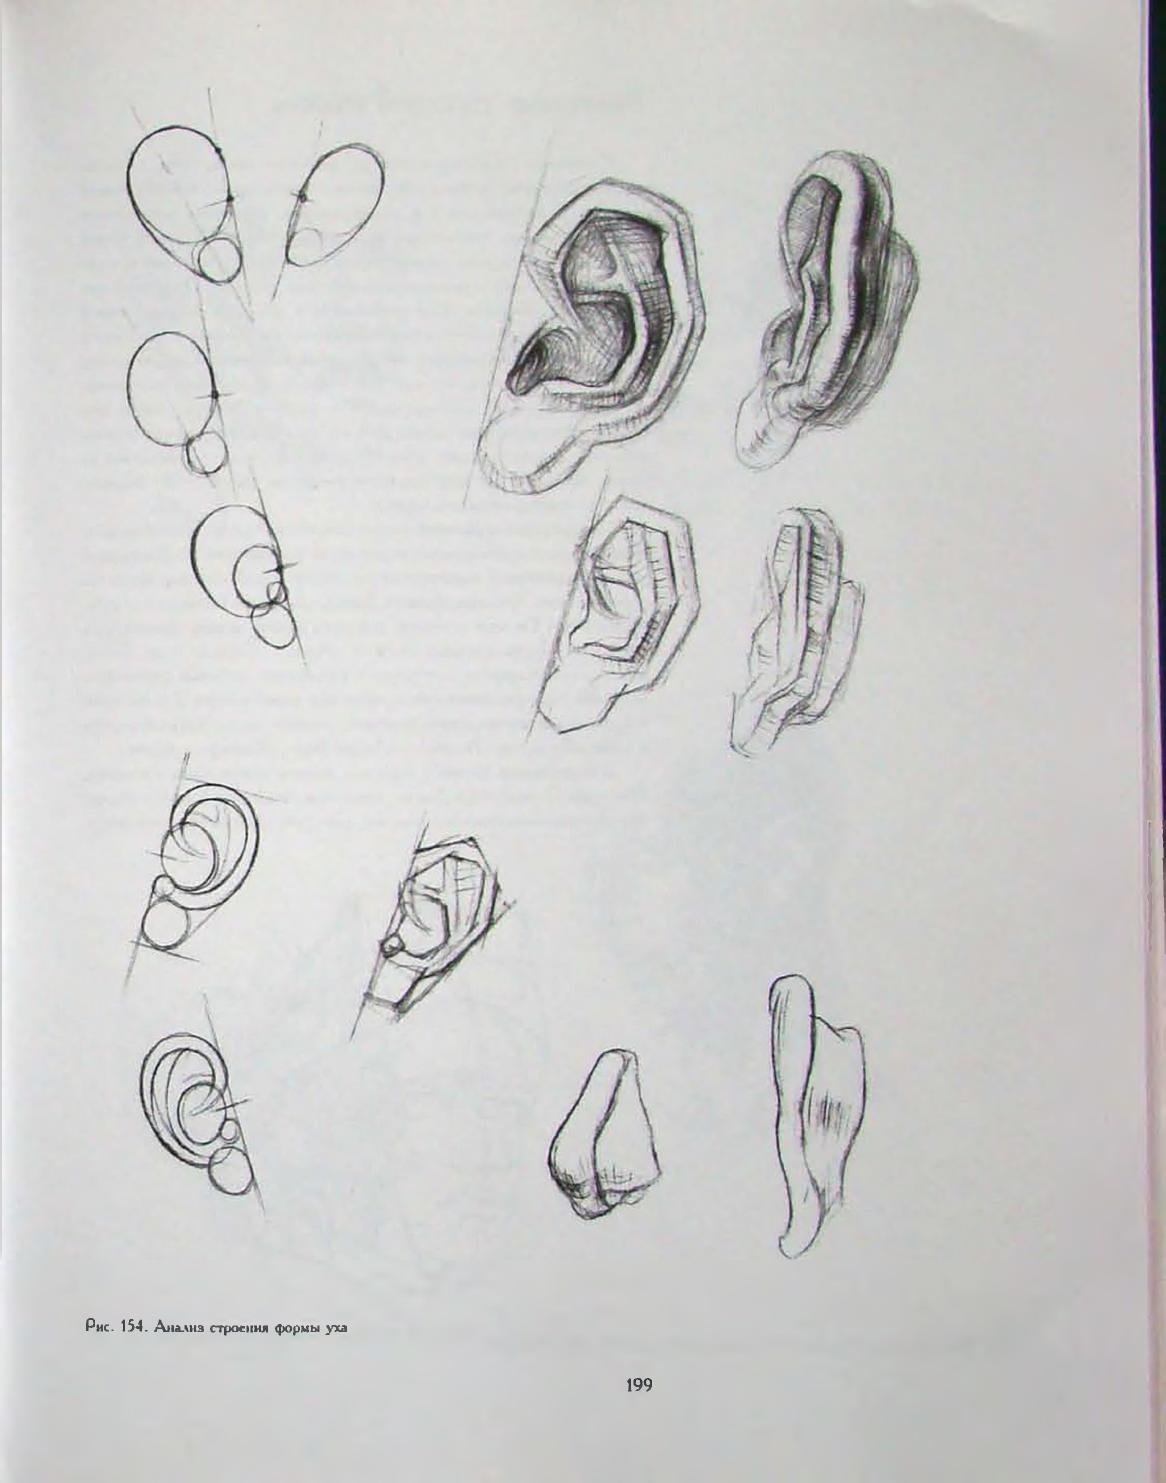 Уха поэтапно. Баммес анатомия уха. Построение уха Давида Академический рисунок. Ухо Давида Академический рисунок построение. Глаза Давида Баммес.